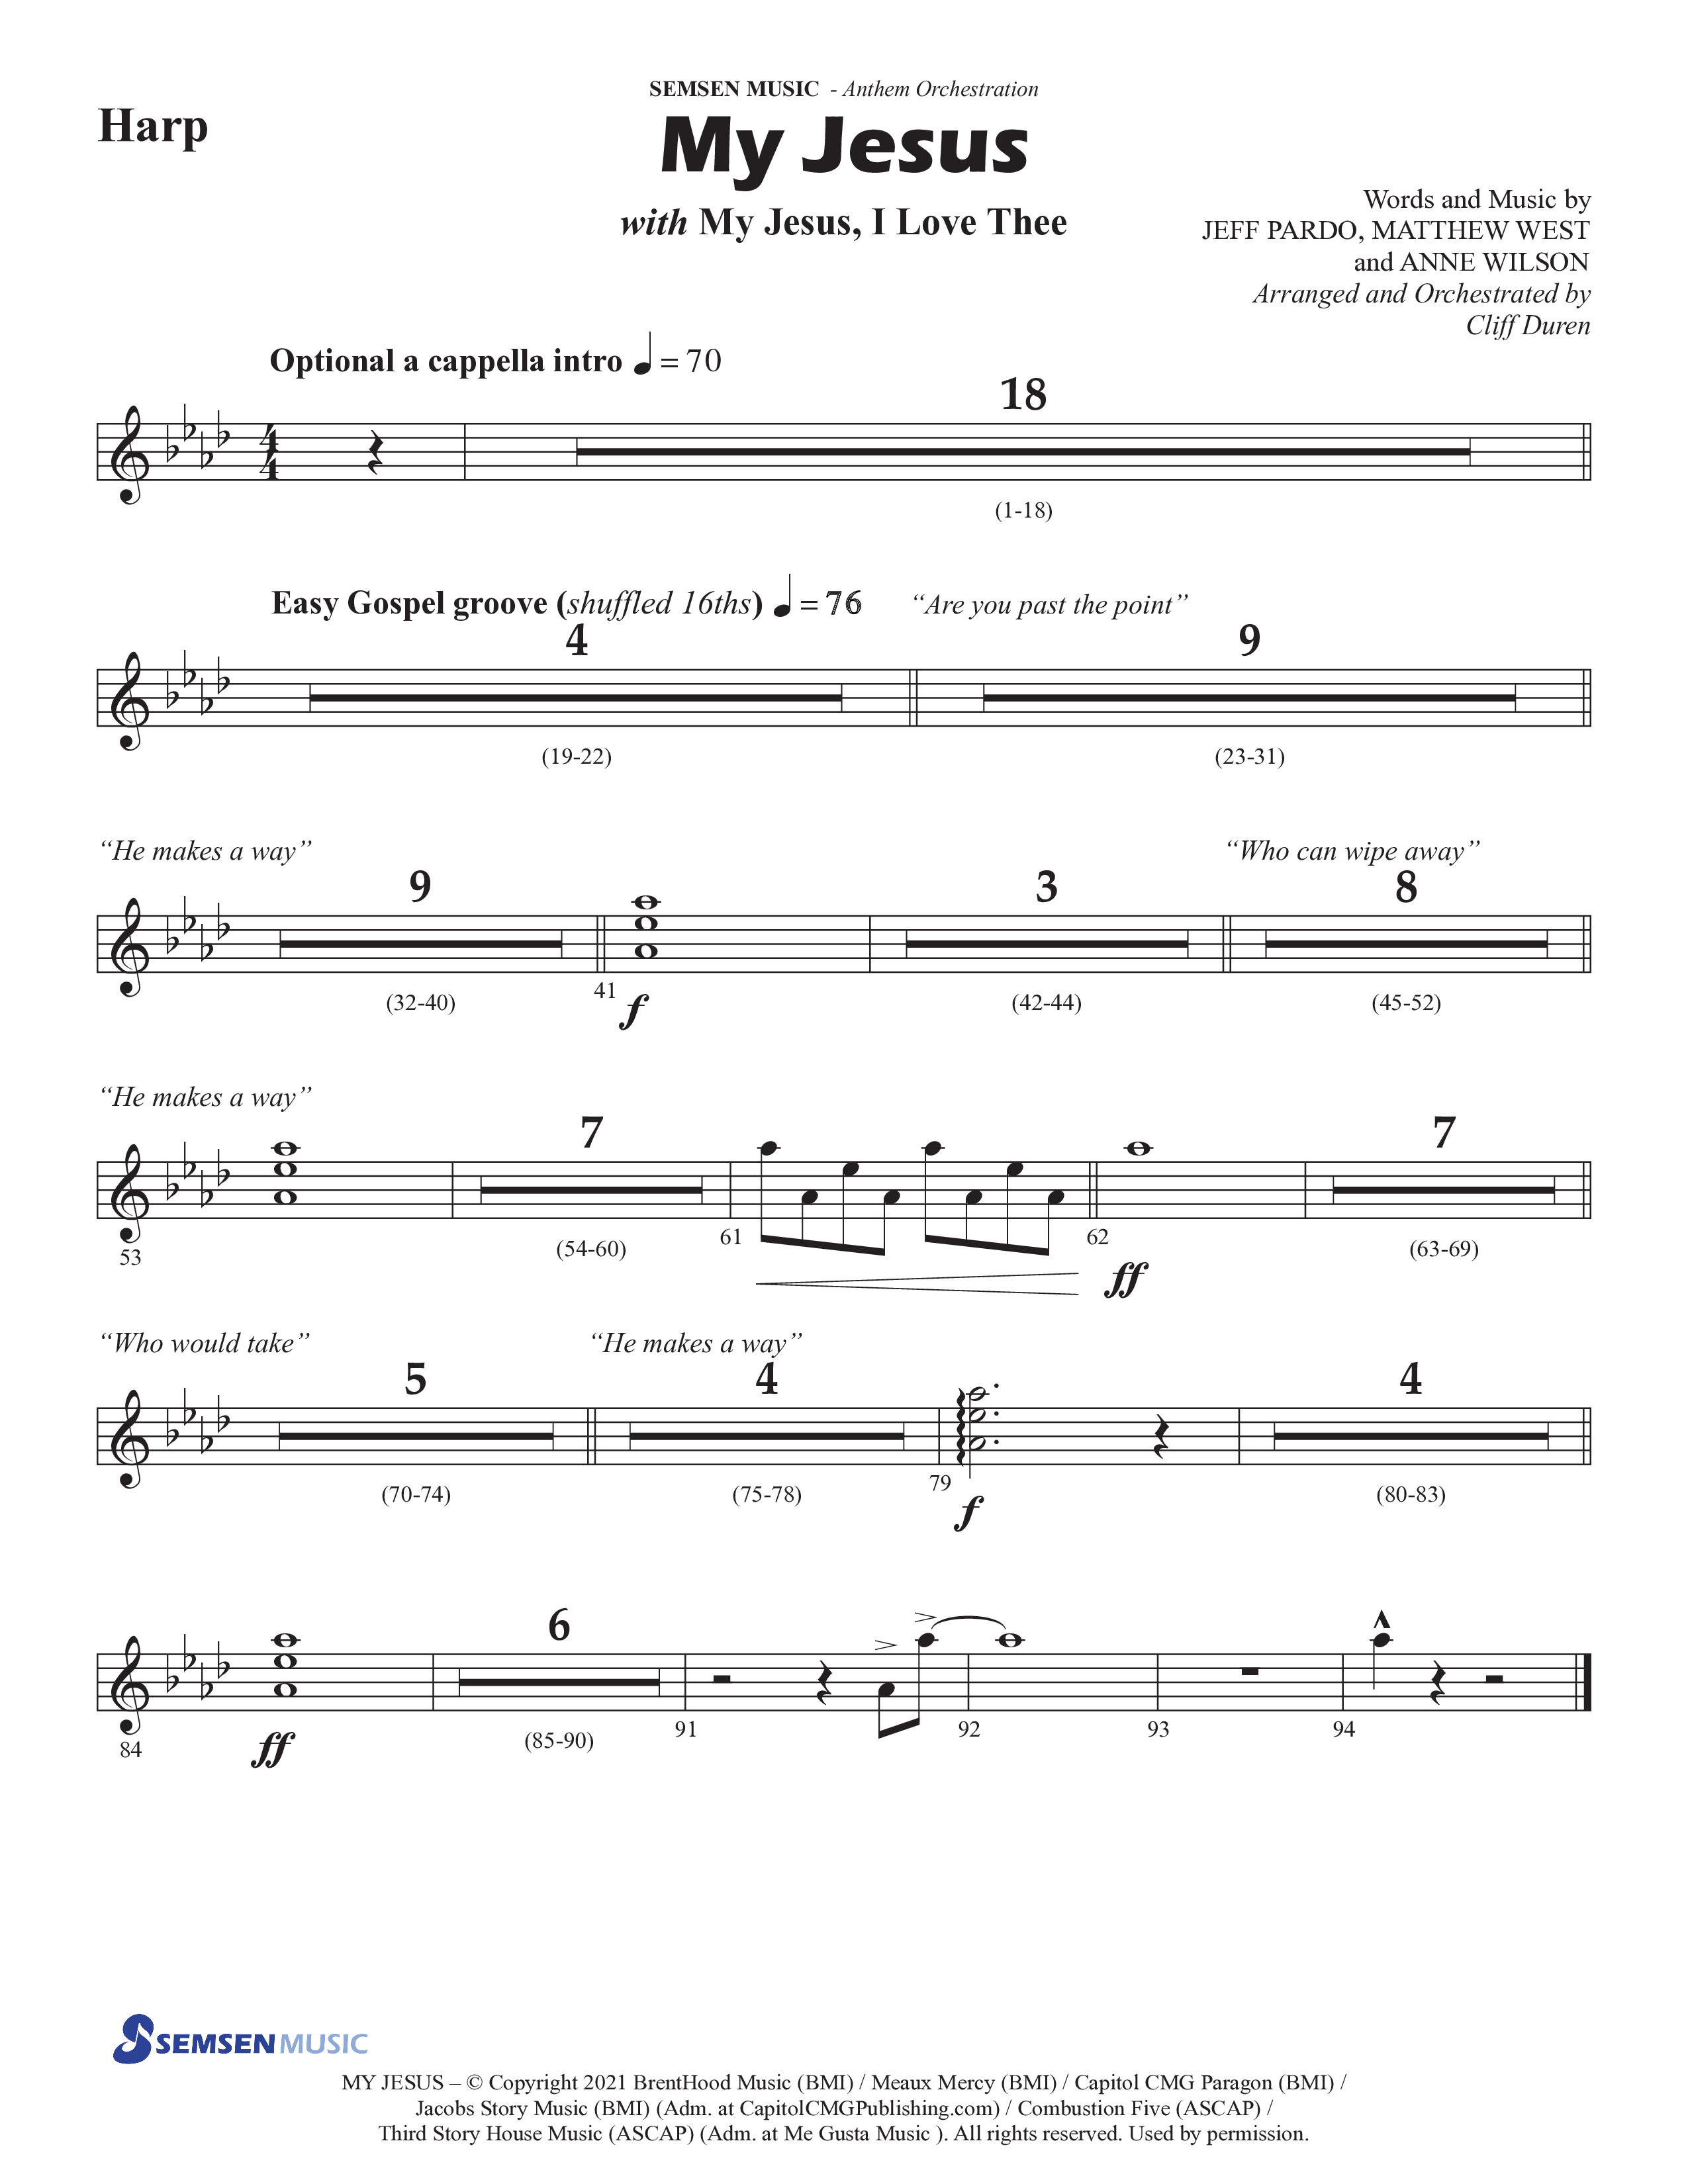 My Jesus (with My Jesus I Love Thee) (Choral Anthem SATB) Harp (Semsen Music / Arr. Cliff Duren)